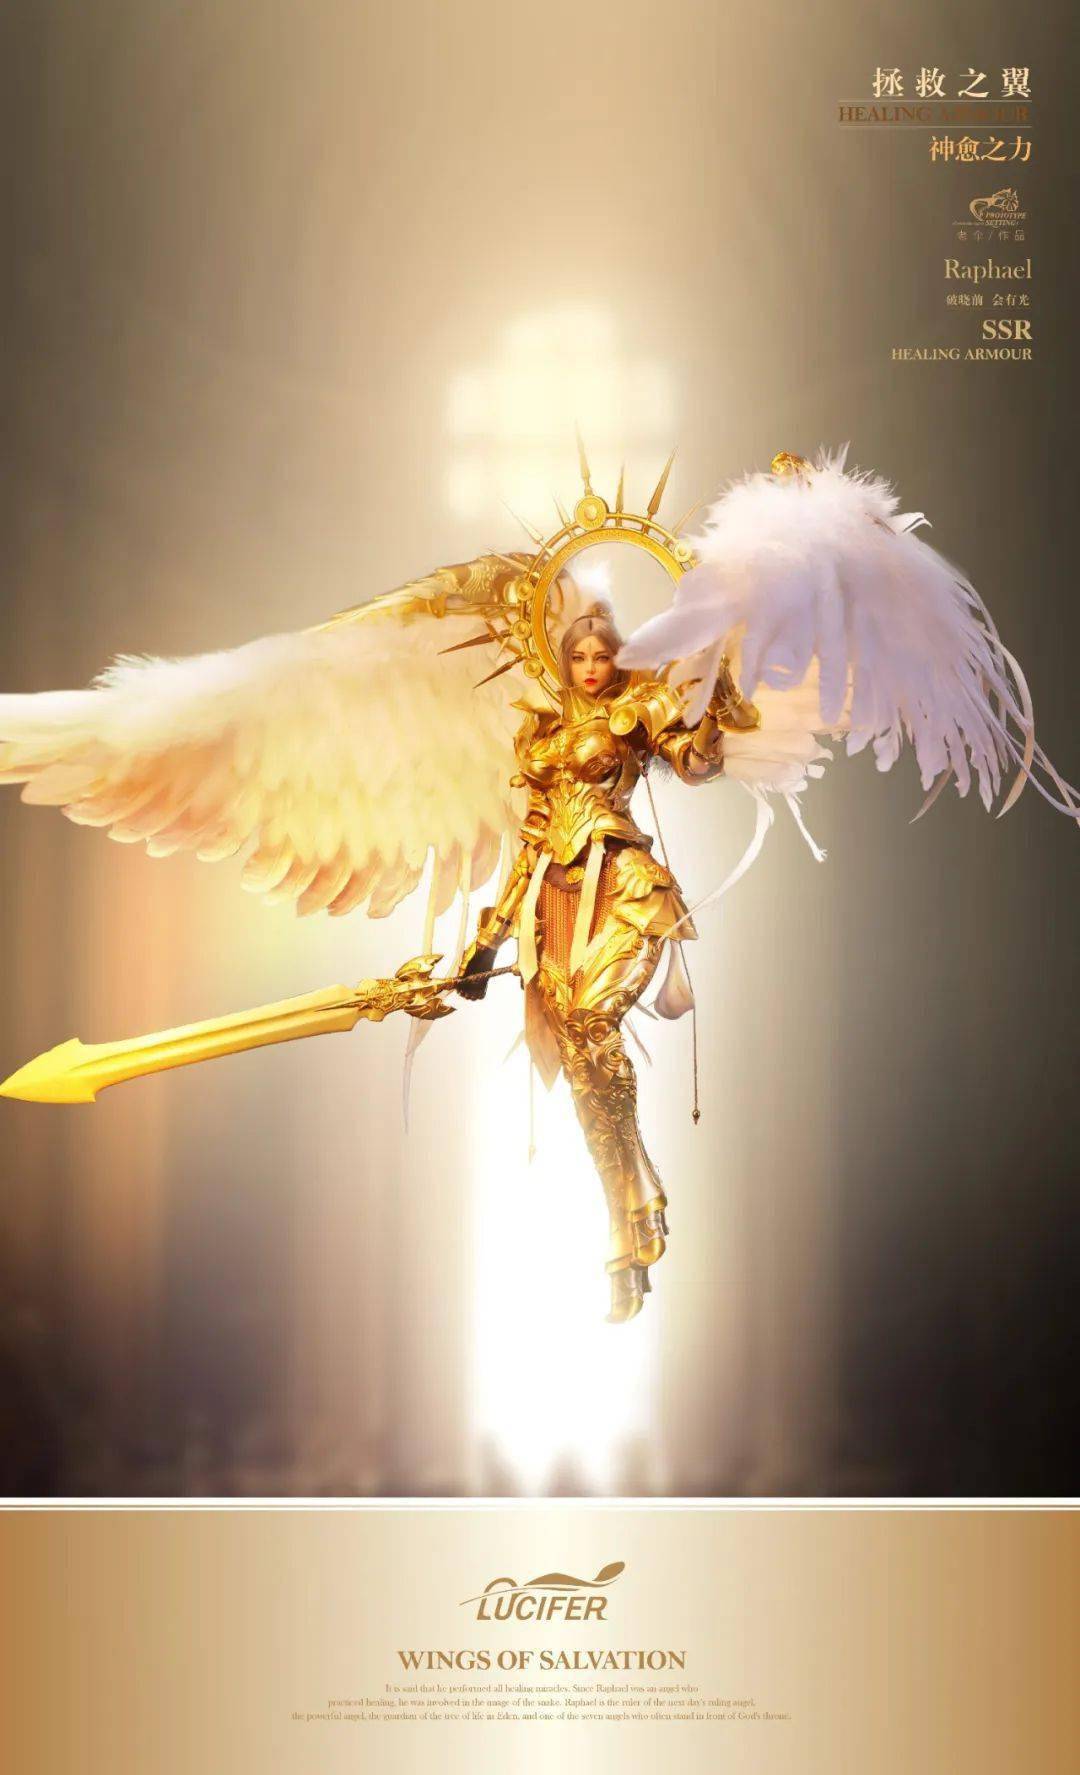 路西法拯救之翼拉斐尔,大天使的光芒太耀眼啦!